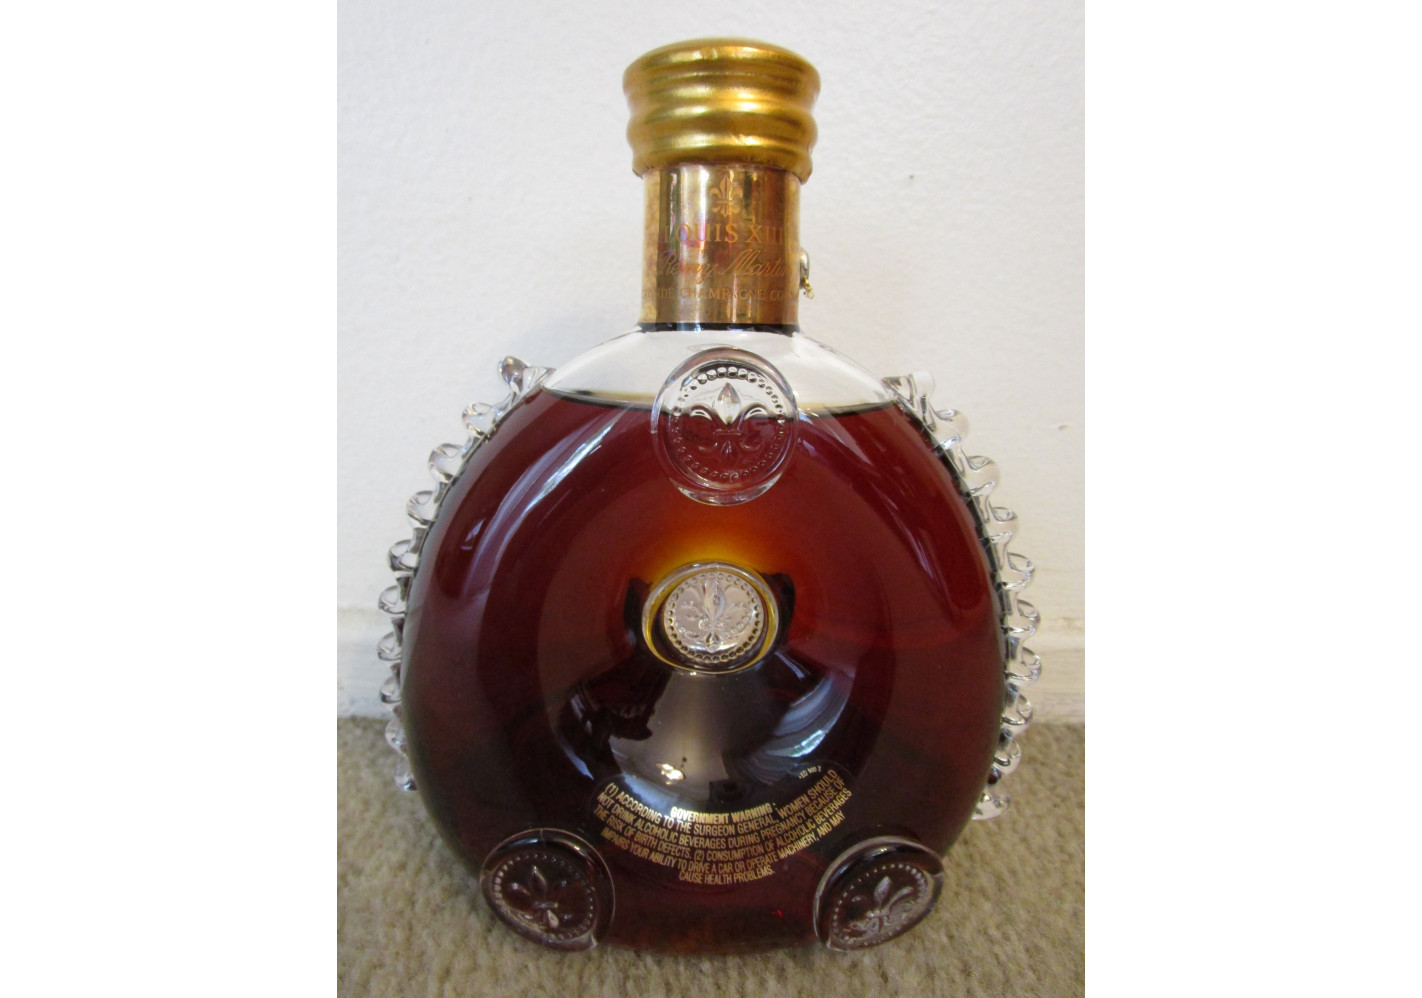 Rémy Martin Louis XIII Cognac The Miniature Edition (50ml): Buy